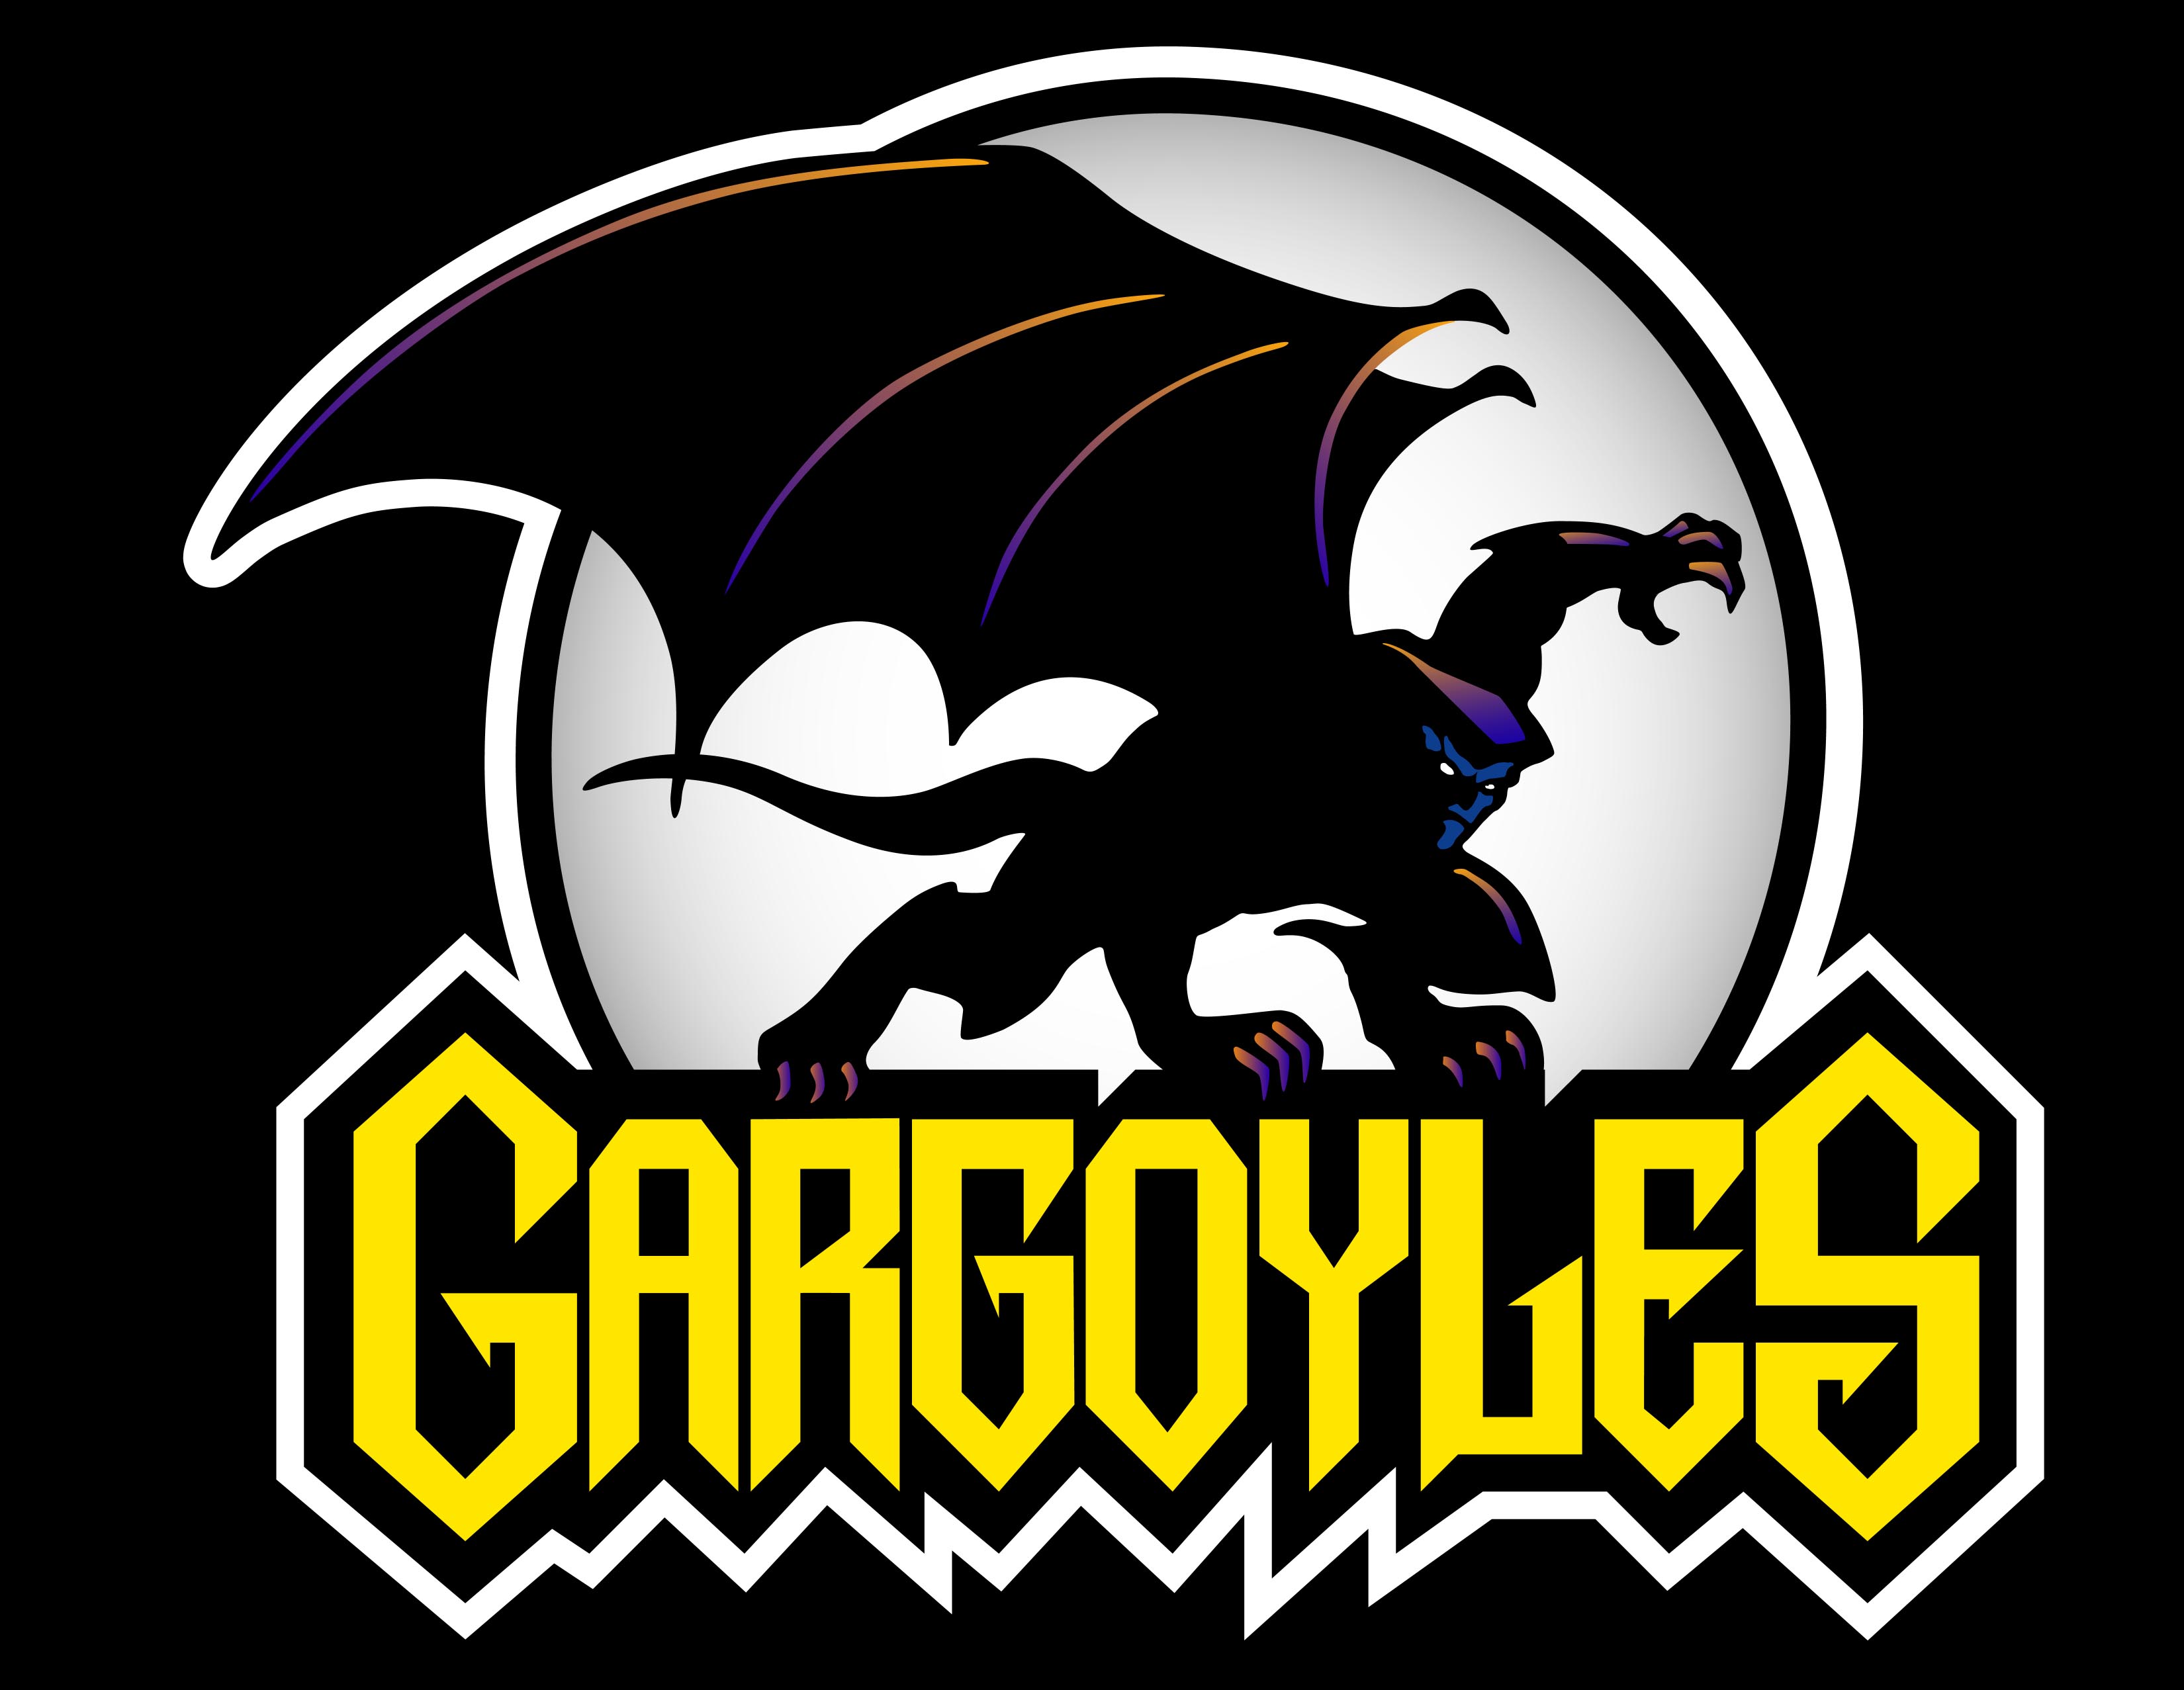 GargoylesLogo.jpg